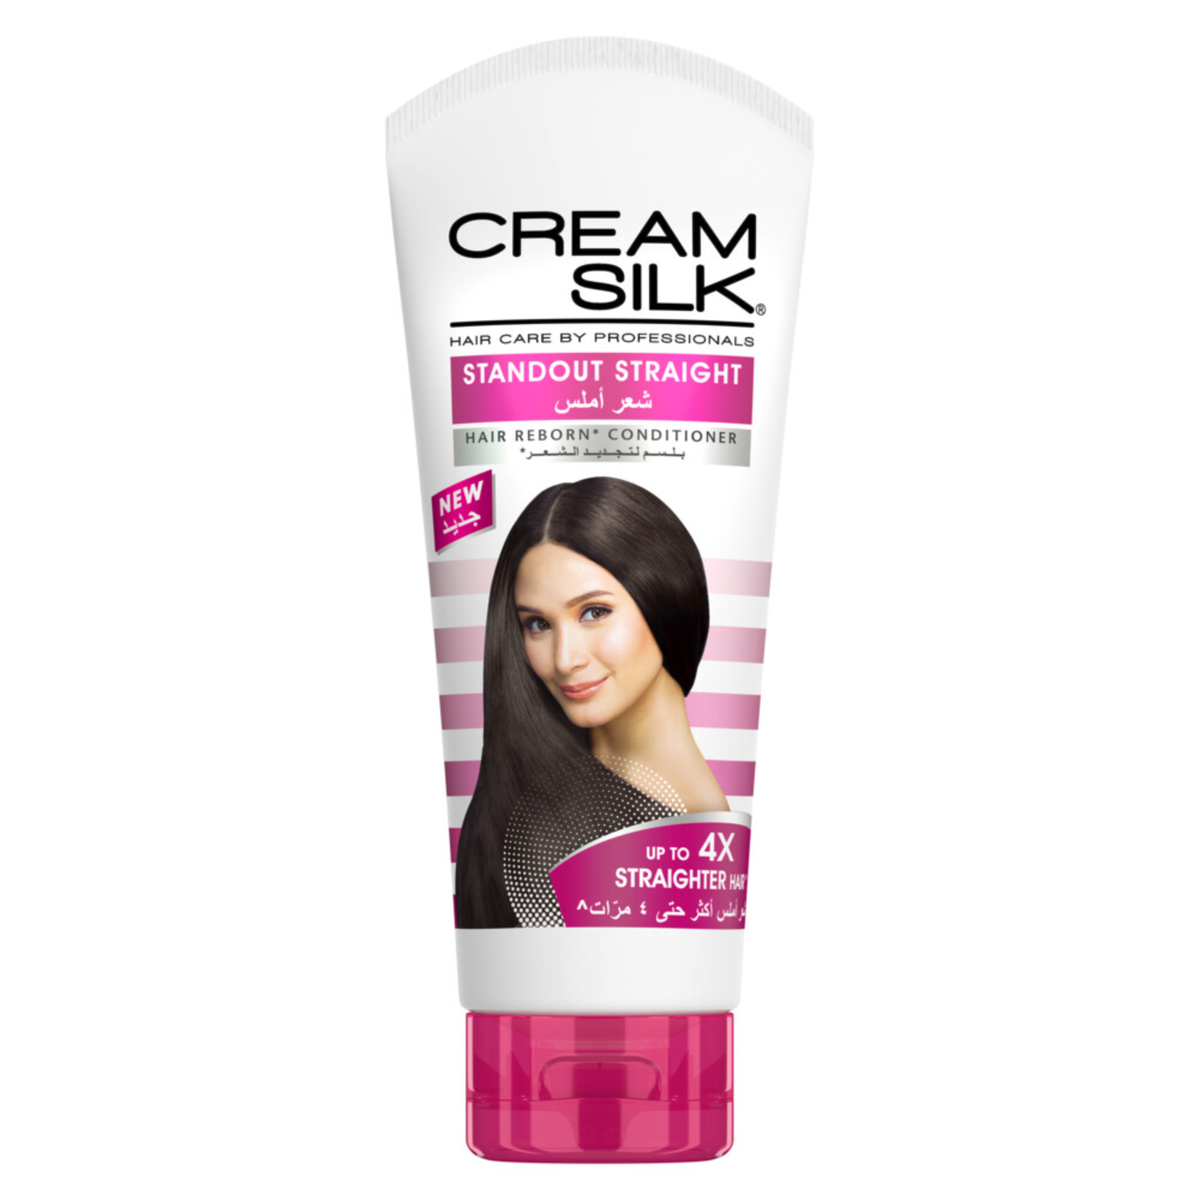 Cream Silk Conditioner Hair Reborn Standout Straight 180 ml